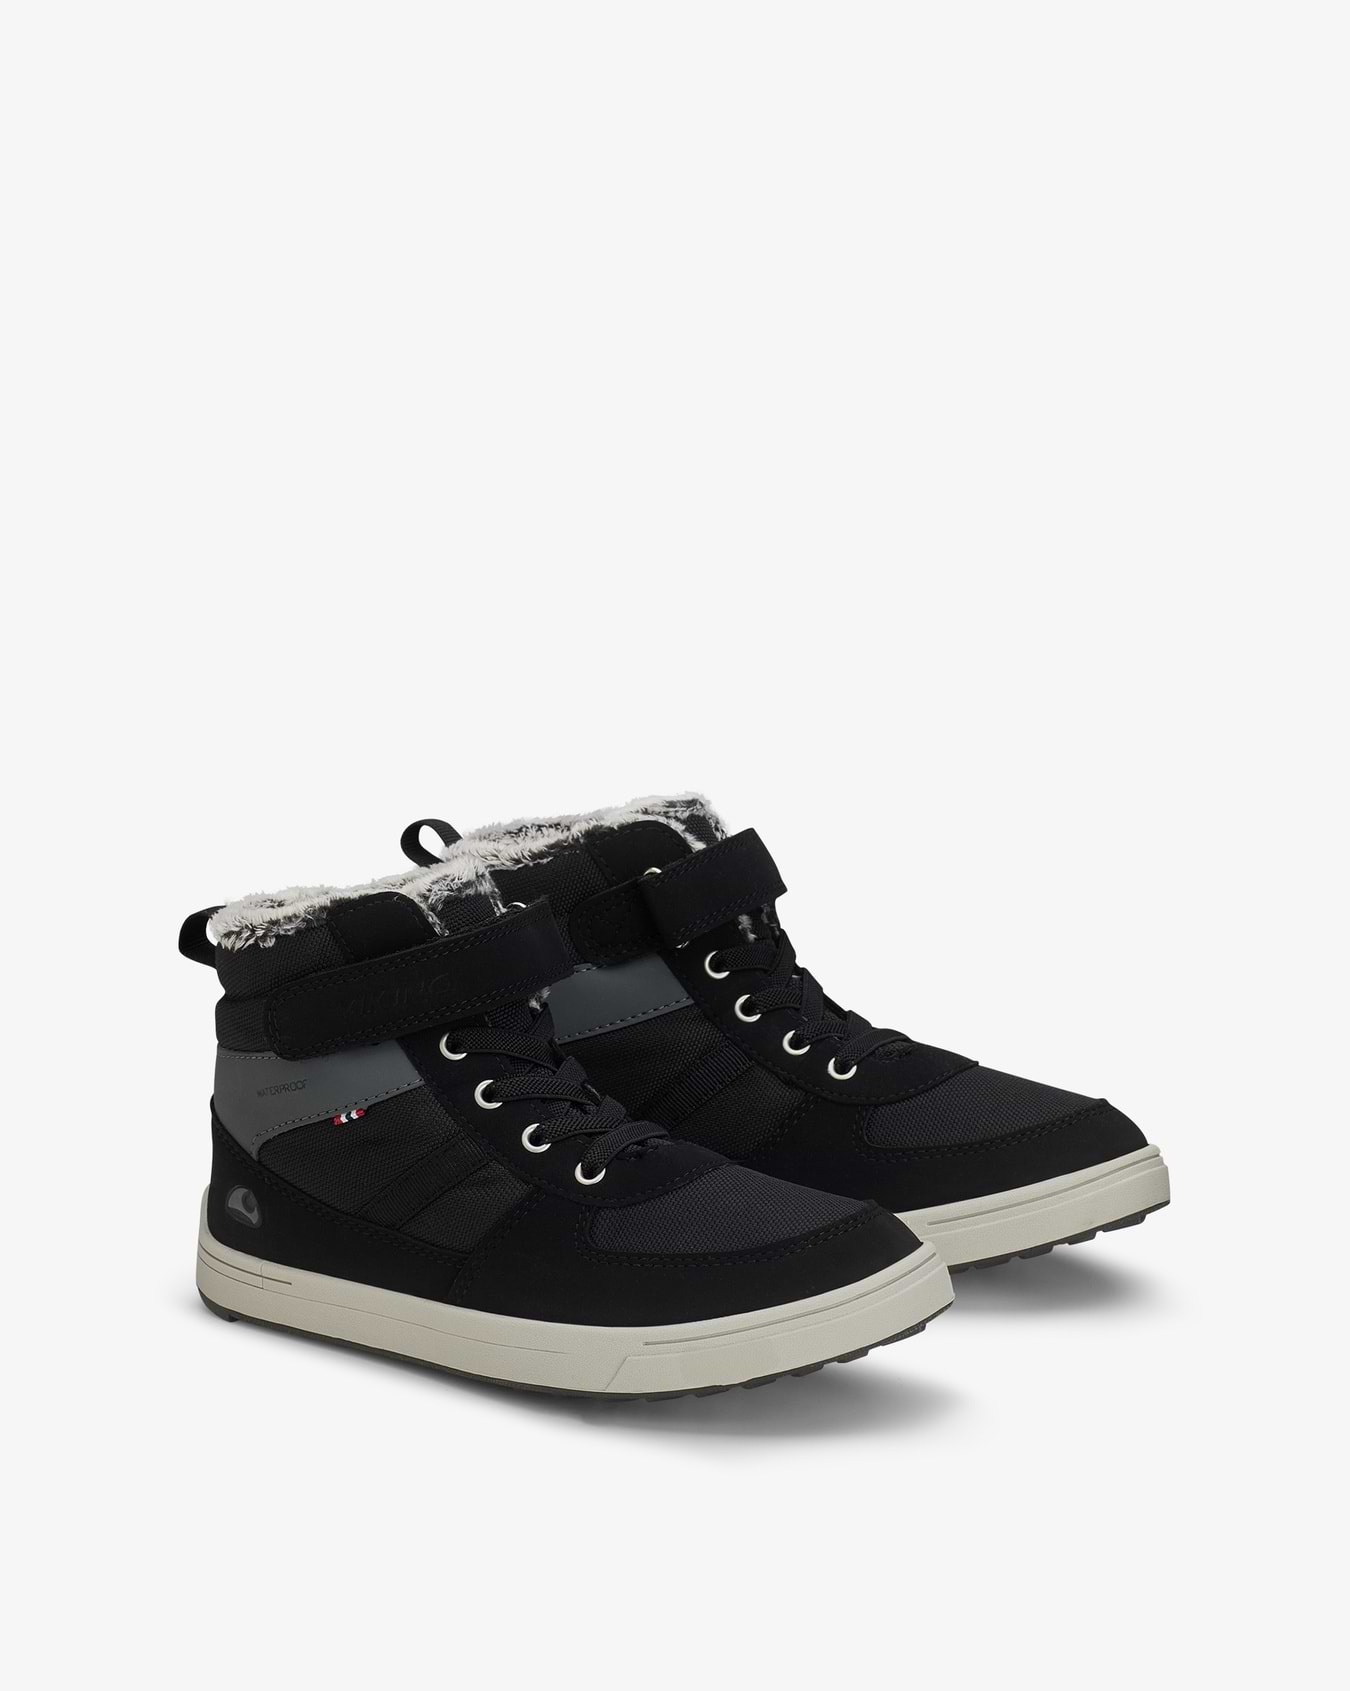 Lucas Mid Jr Black/Grey Sneakers